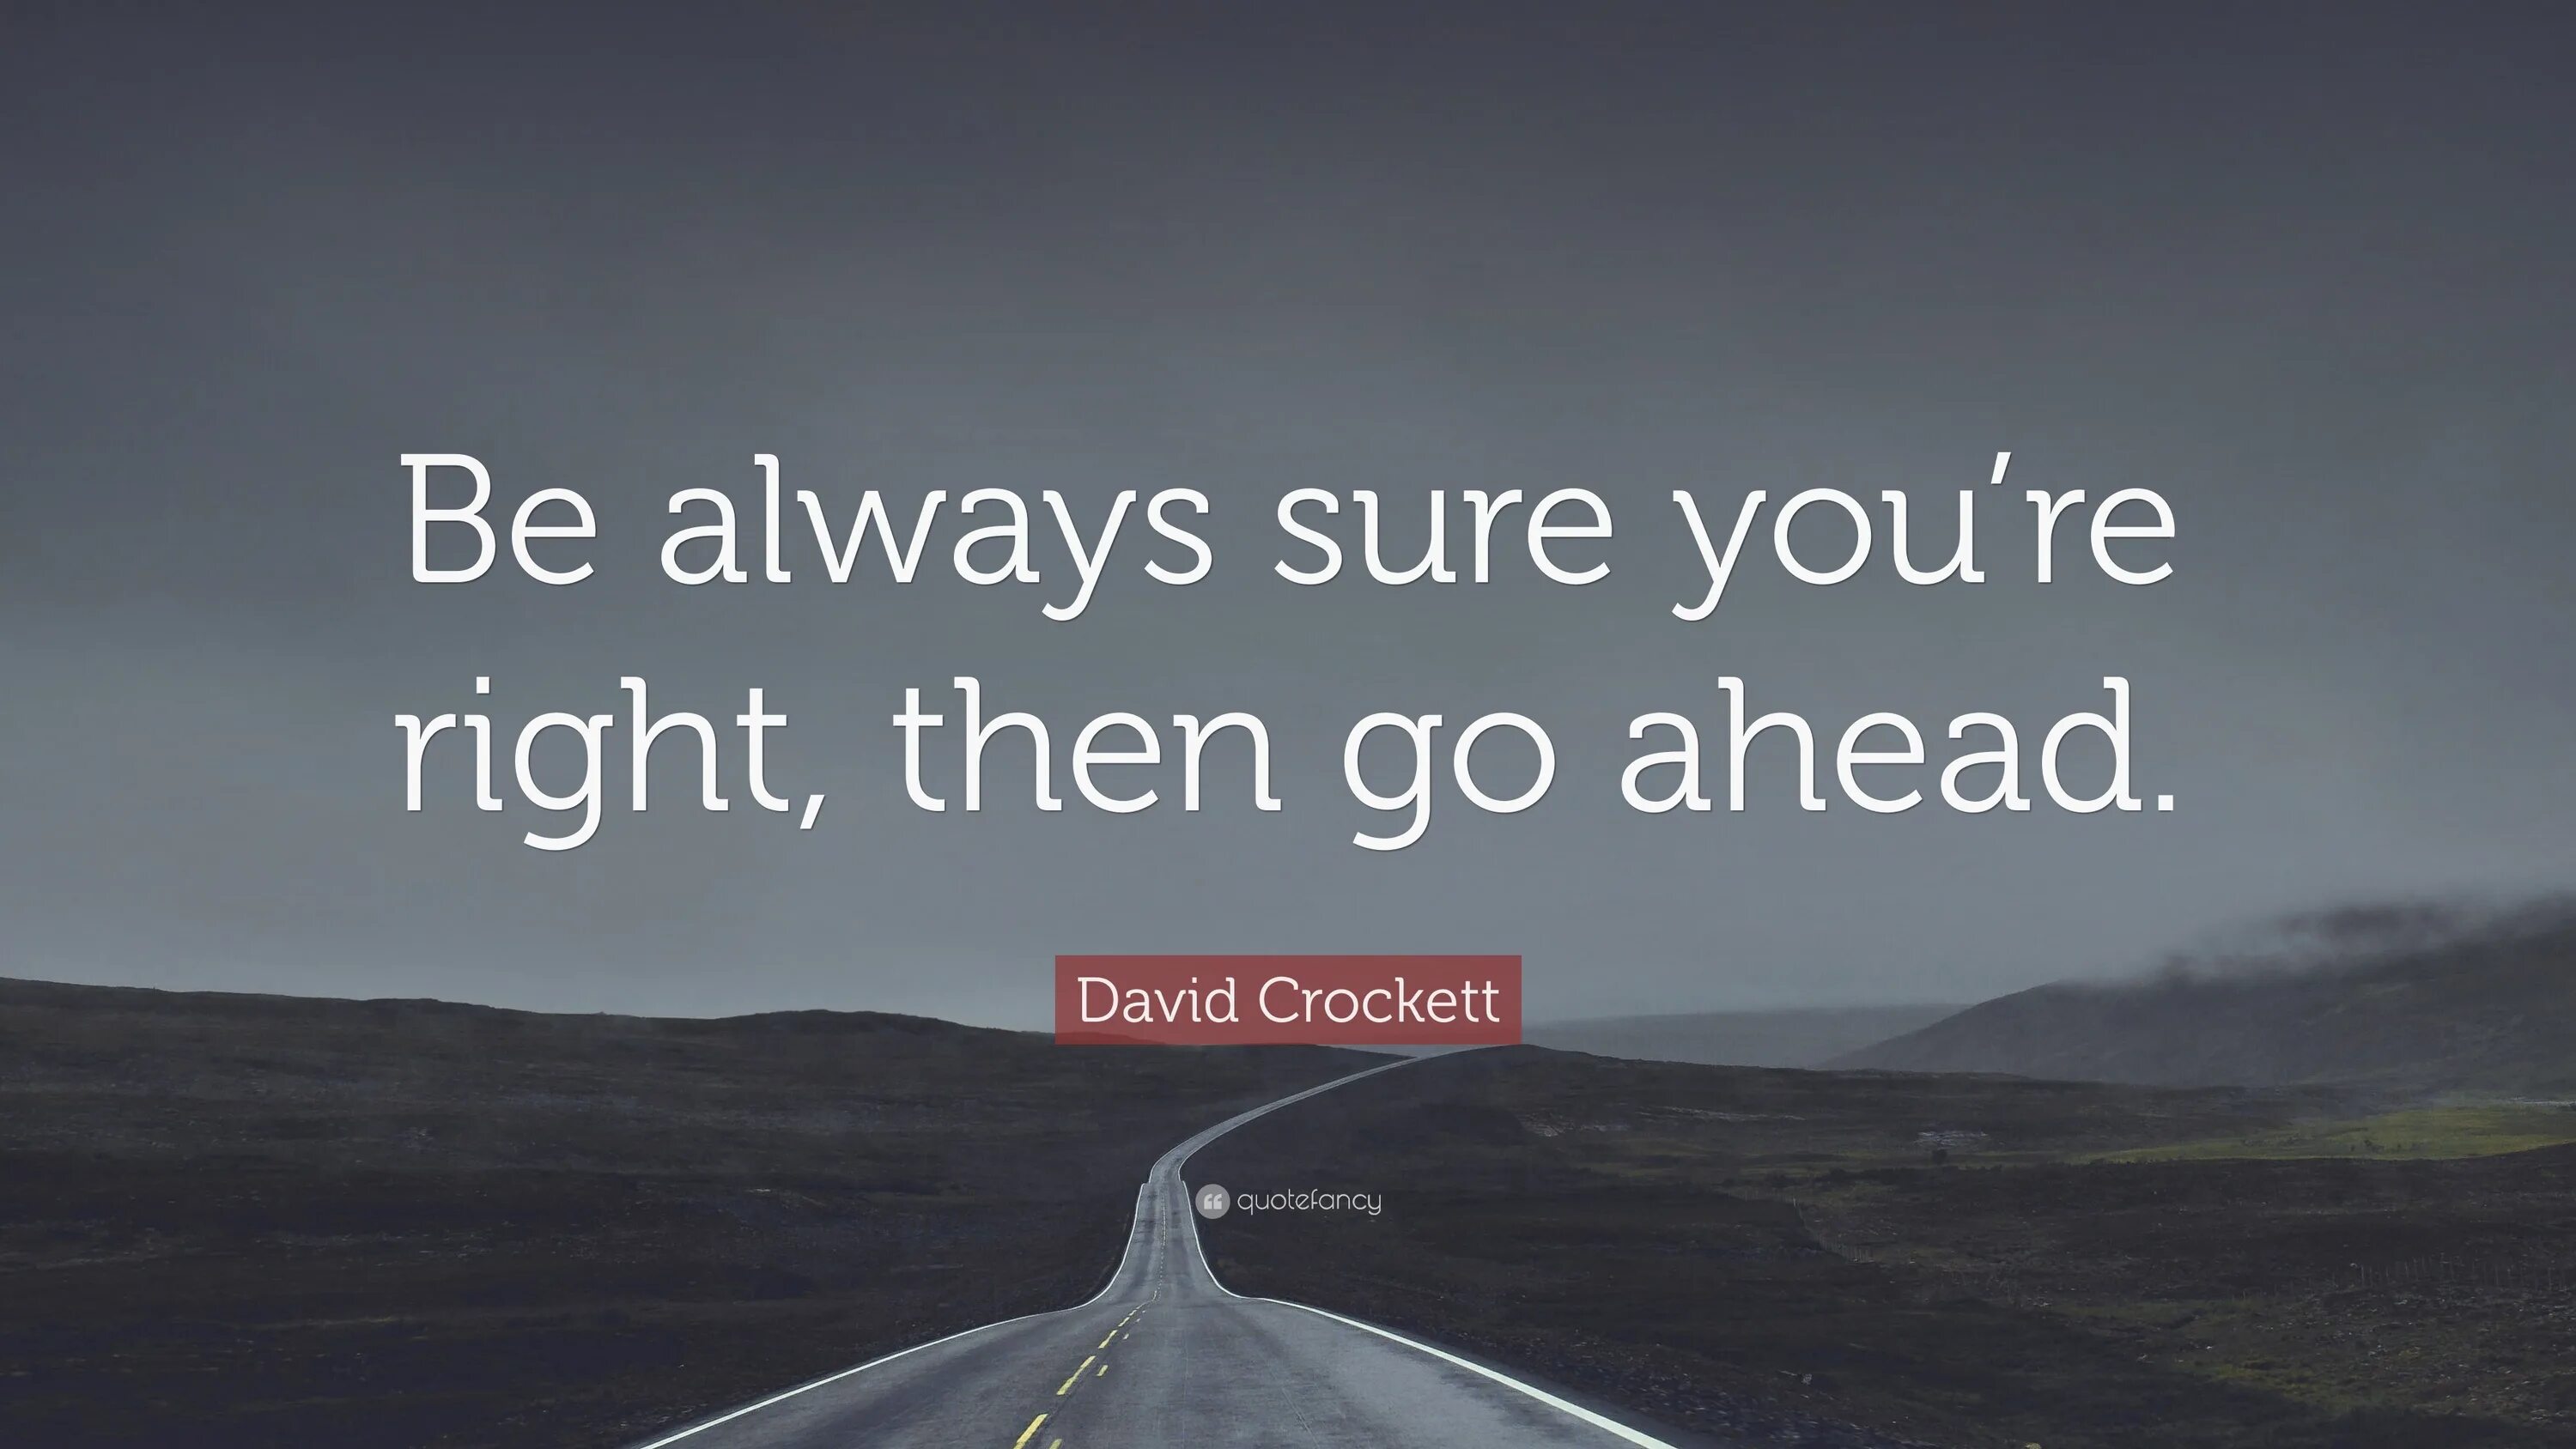 Go ahead. Be always ahead. Go right ahead. Always go ahead.